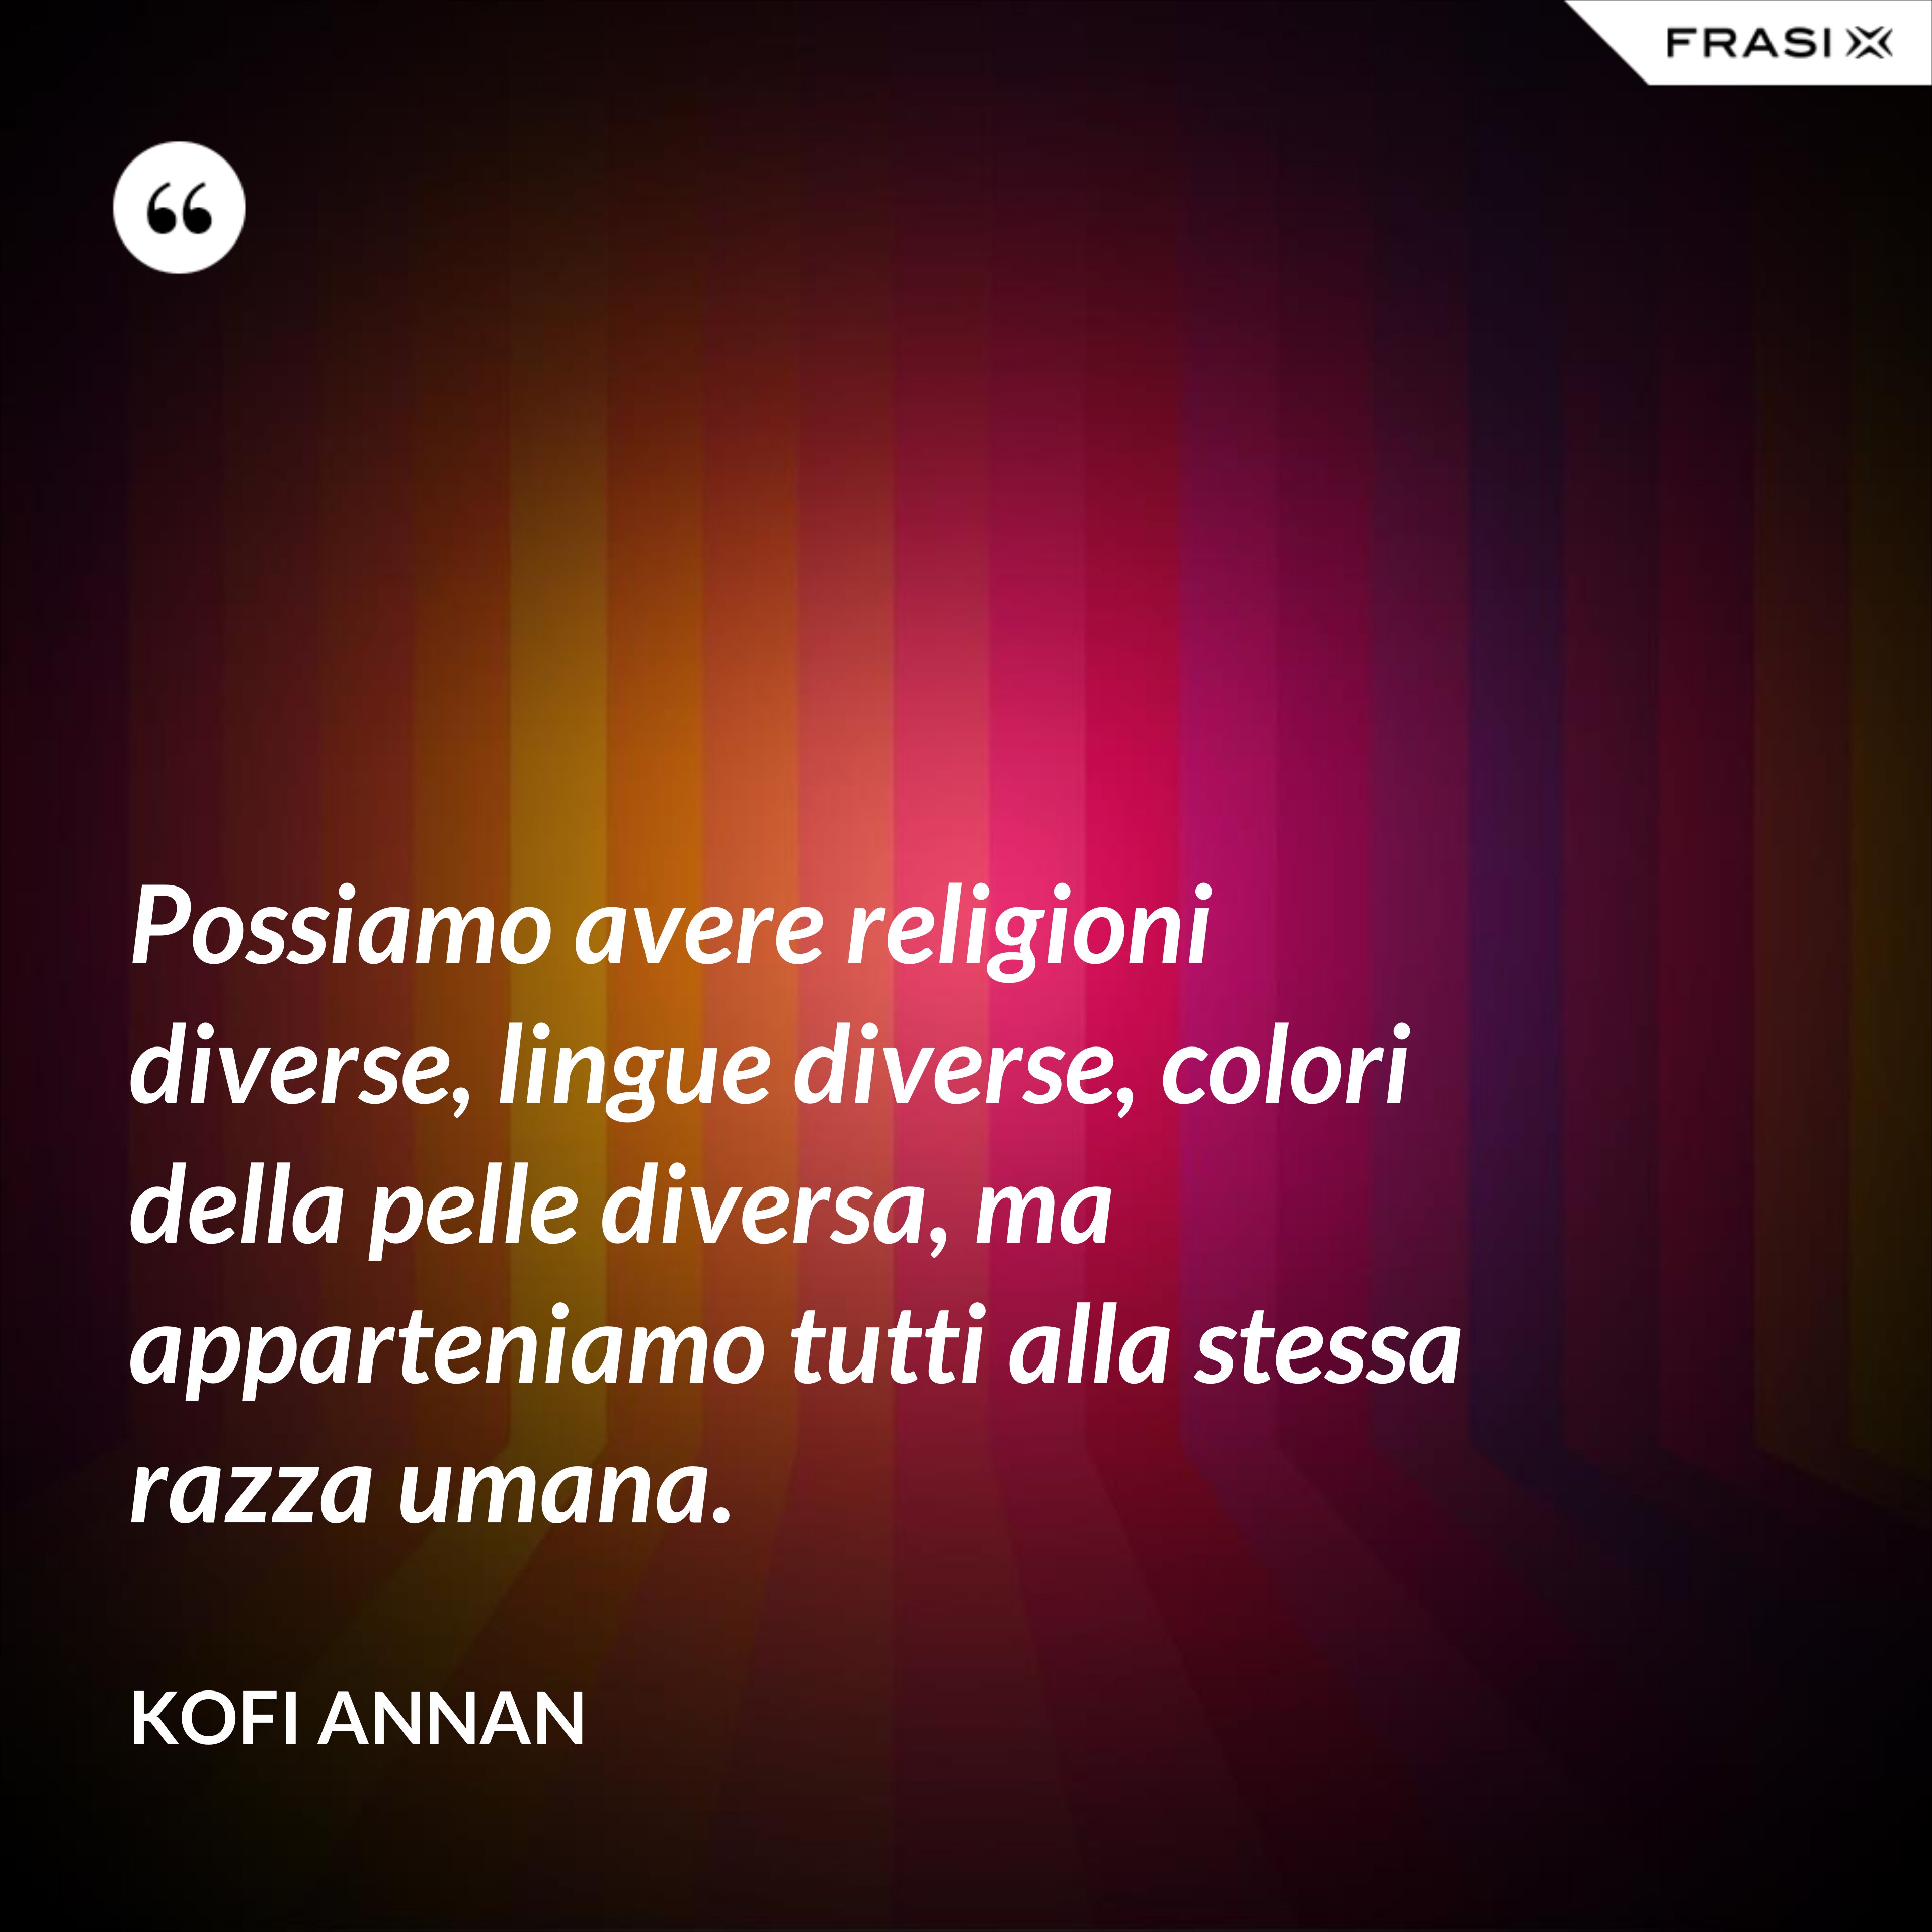 Possiamo avere religioni diverse, lingue diverse, colori della pelle diversa, ma apparteniamo tutti alla stessa razza umana. - Kofi Annan